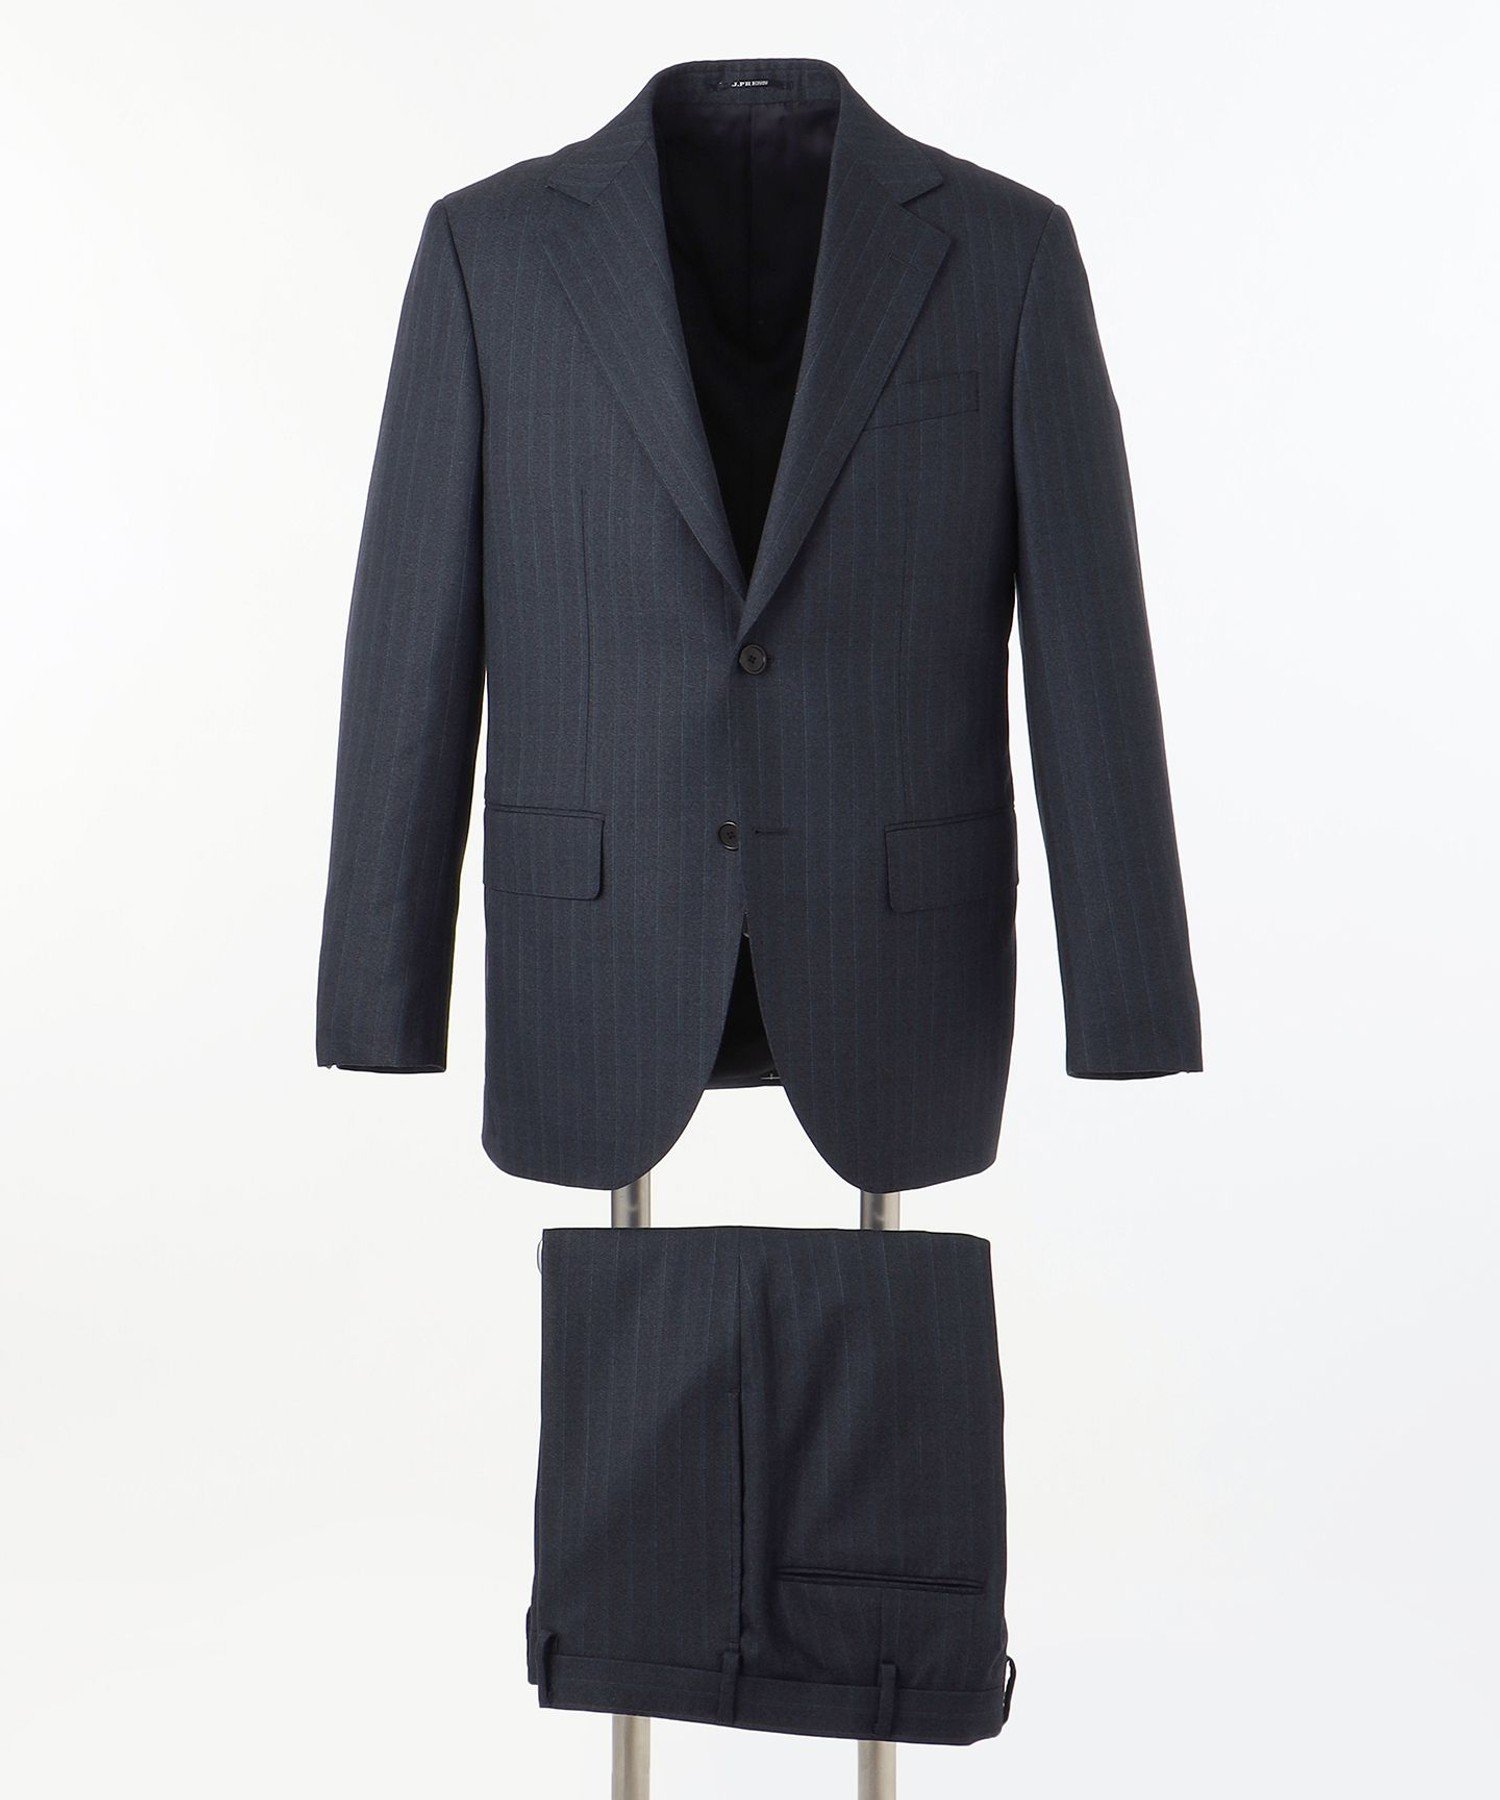 【ESSENTIAL CLOTHING】オルタネートストライプ スーツ